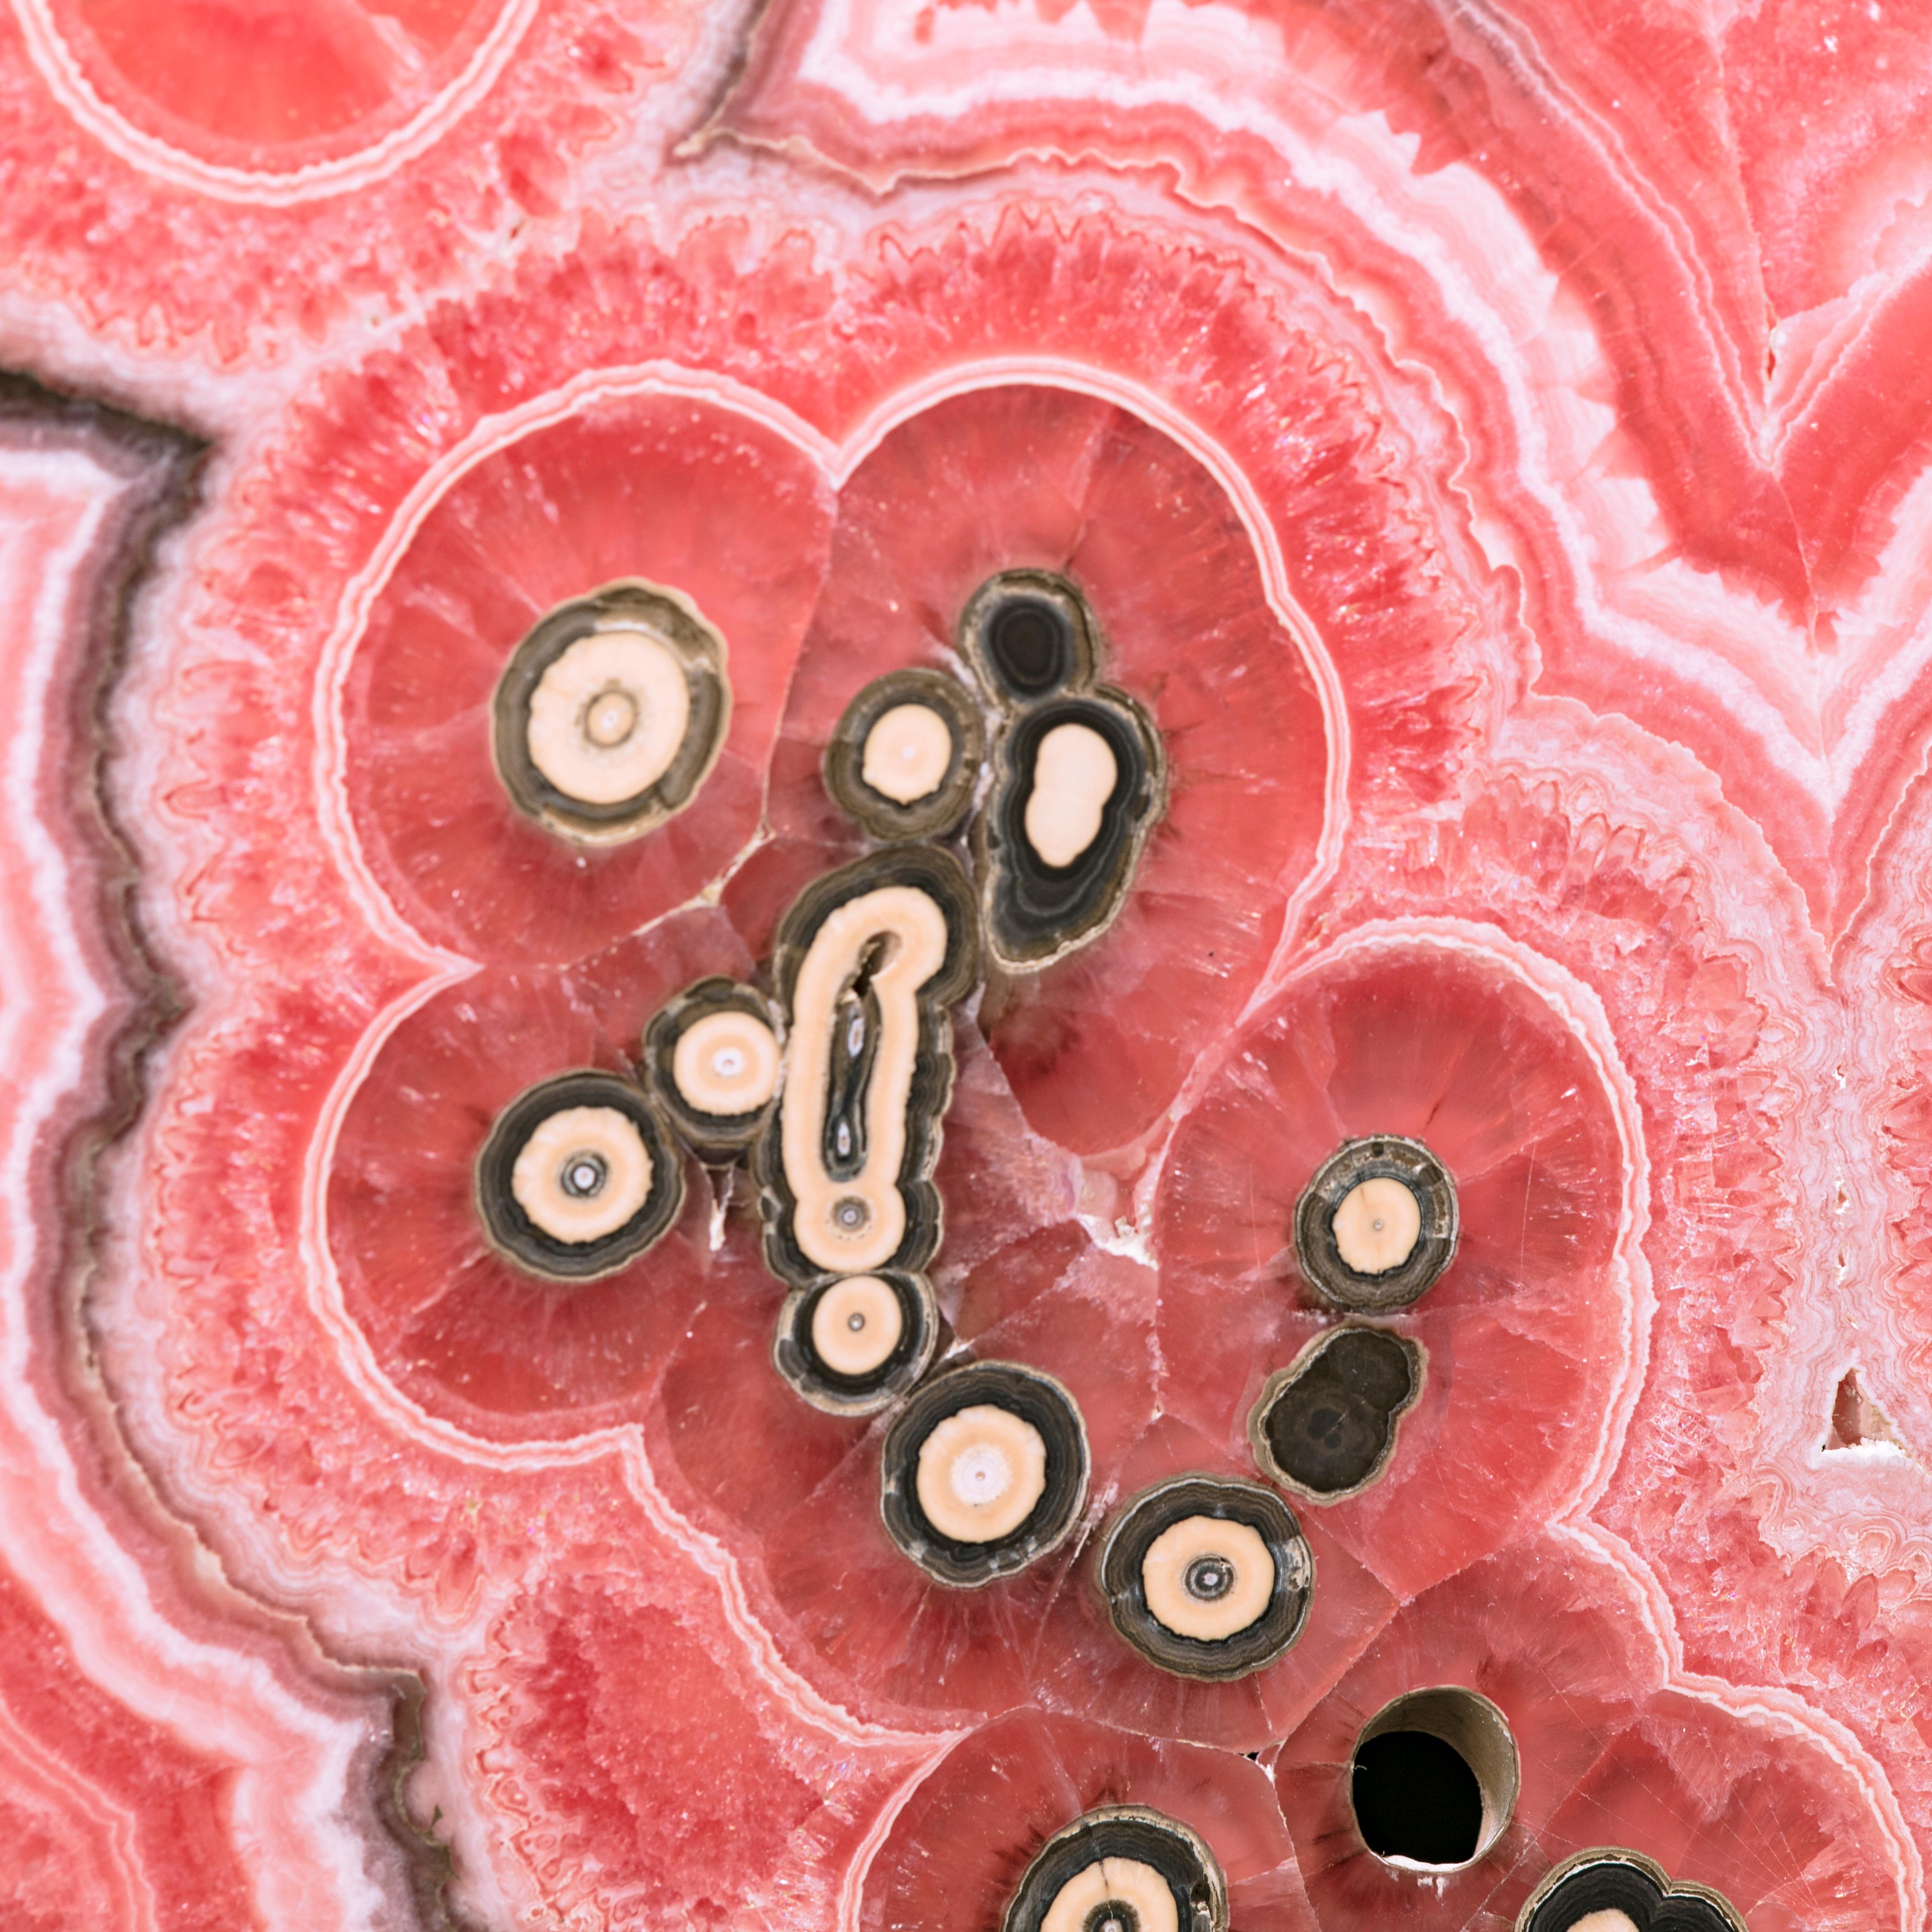 Argentine Pink Heart Rhodochrosite Slice Mineral Specimen, Capillitas Mine, Argentina For Sale